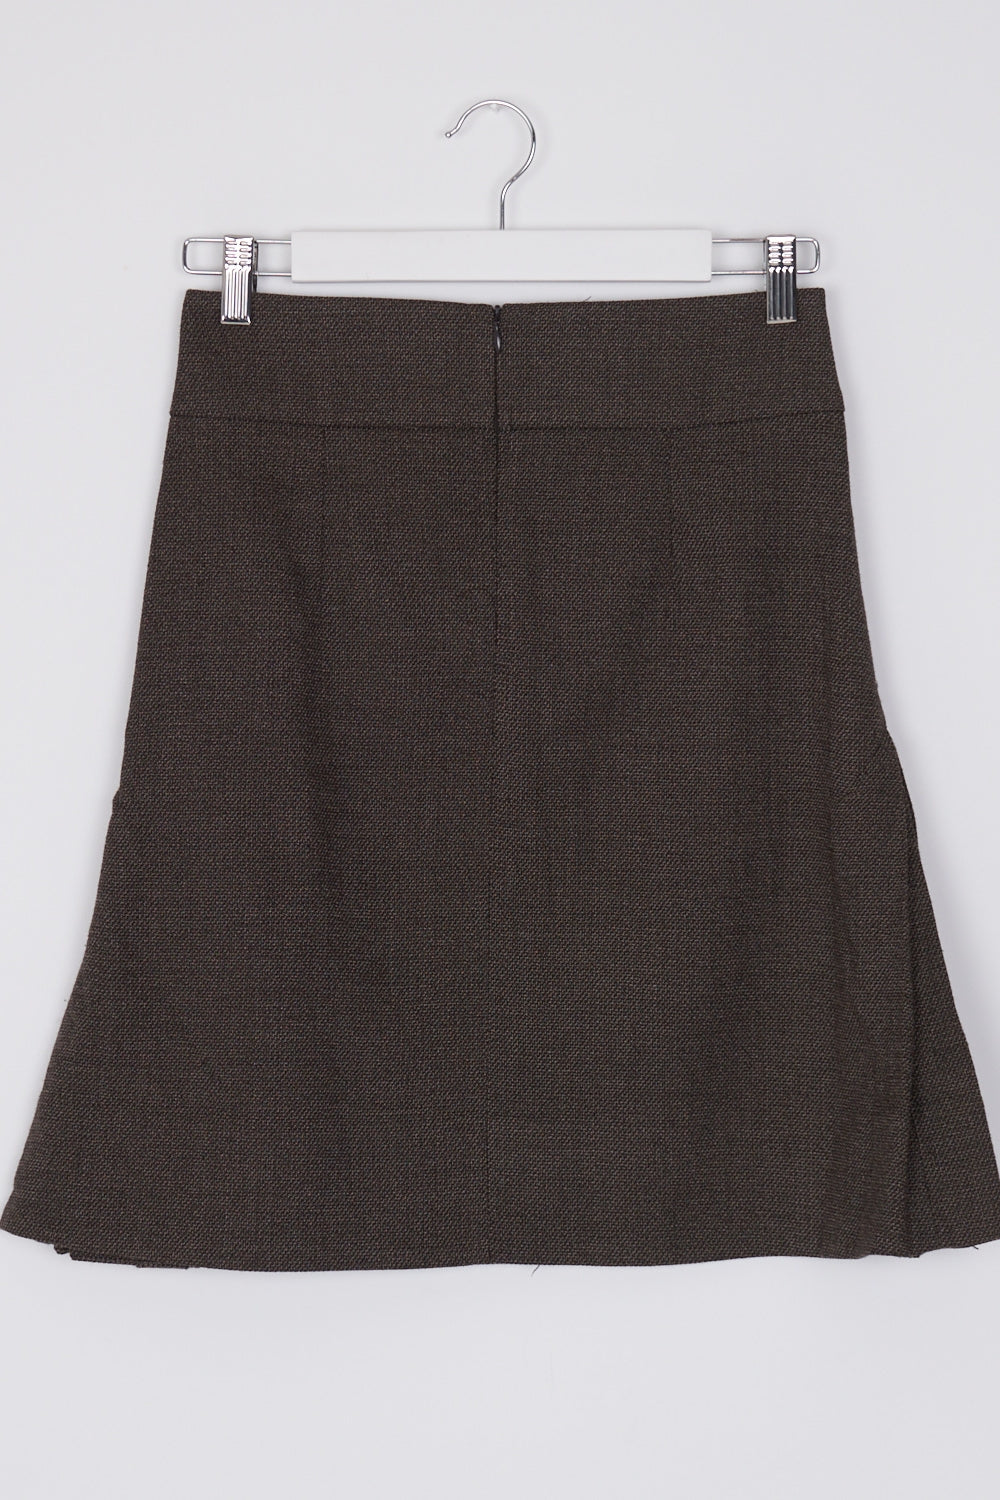 Tatuum Brown Pleated Side Skirt 6